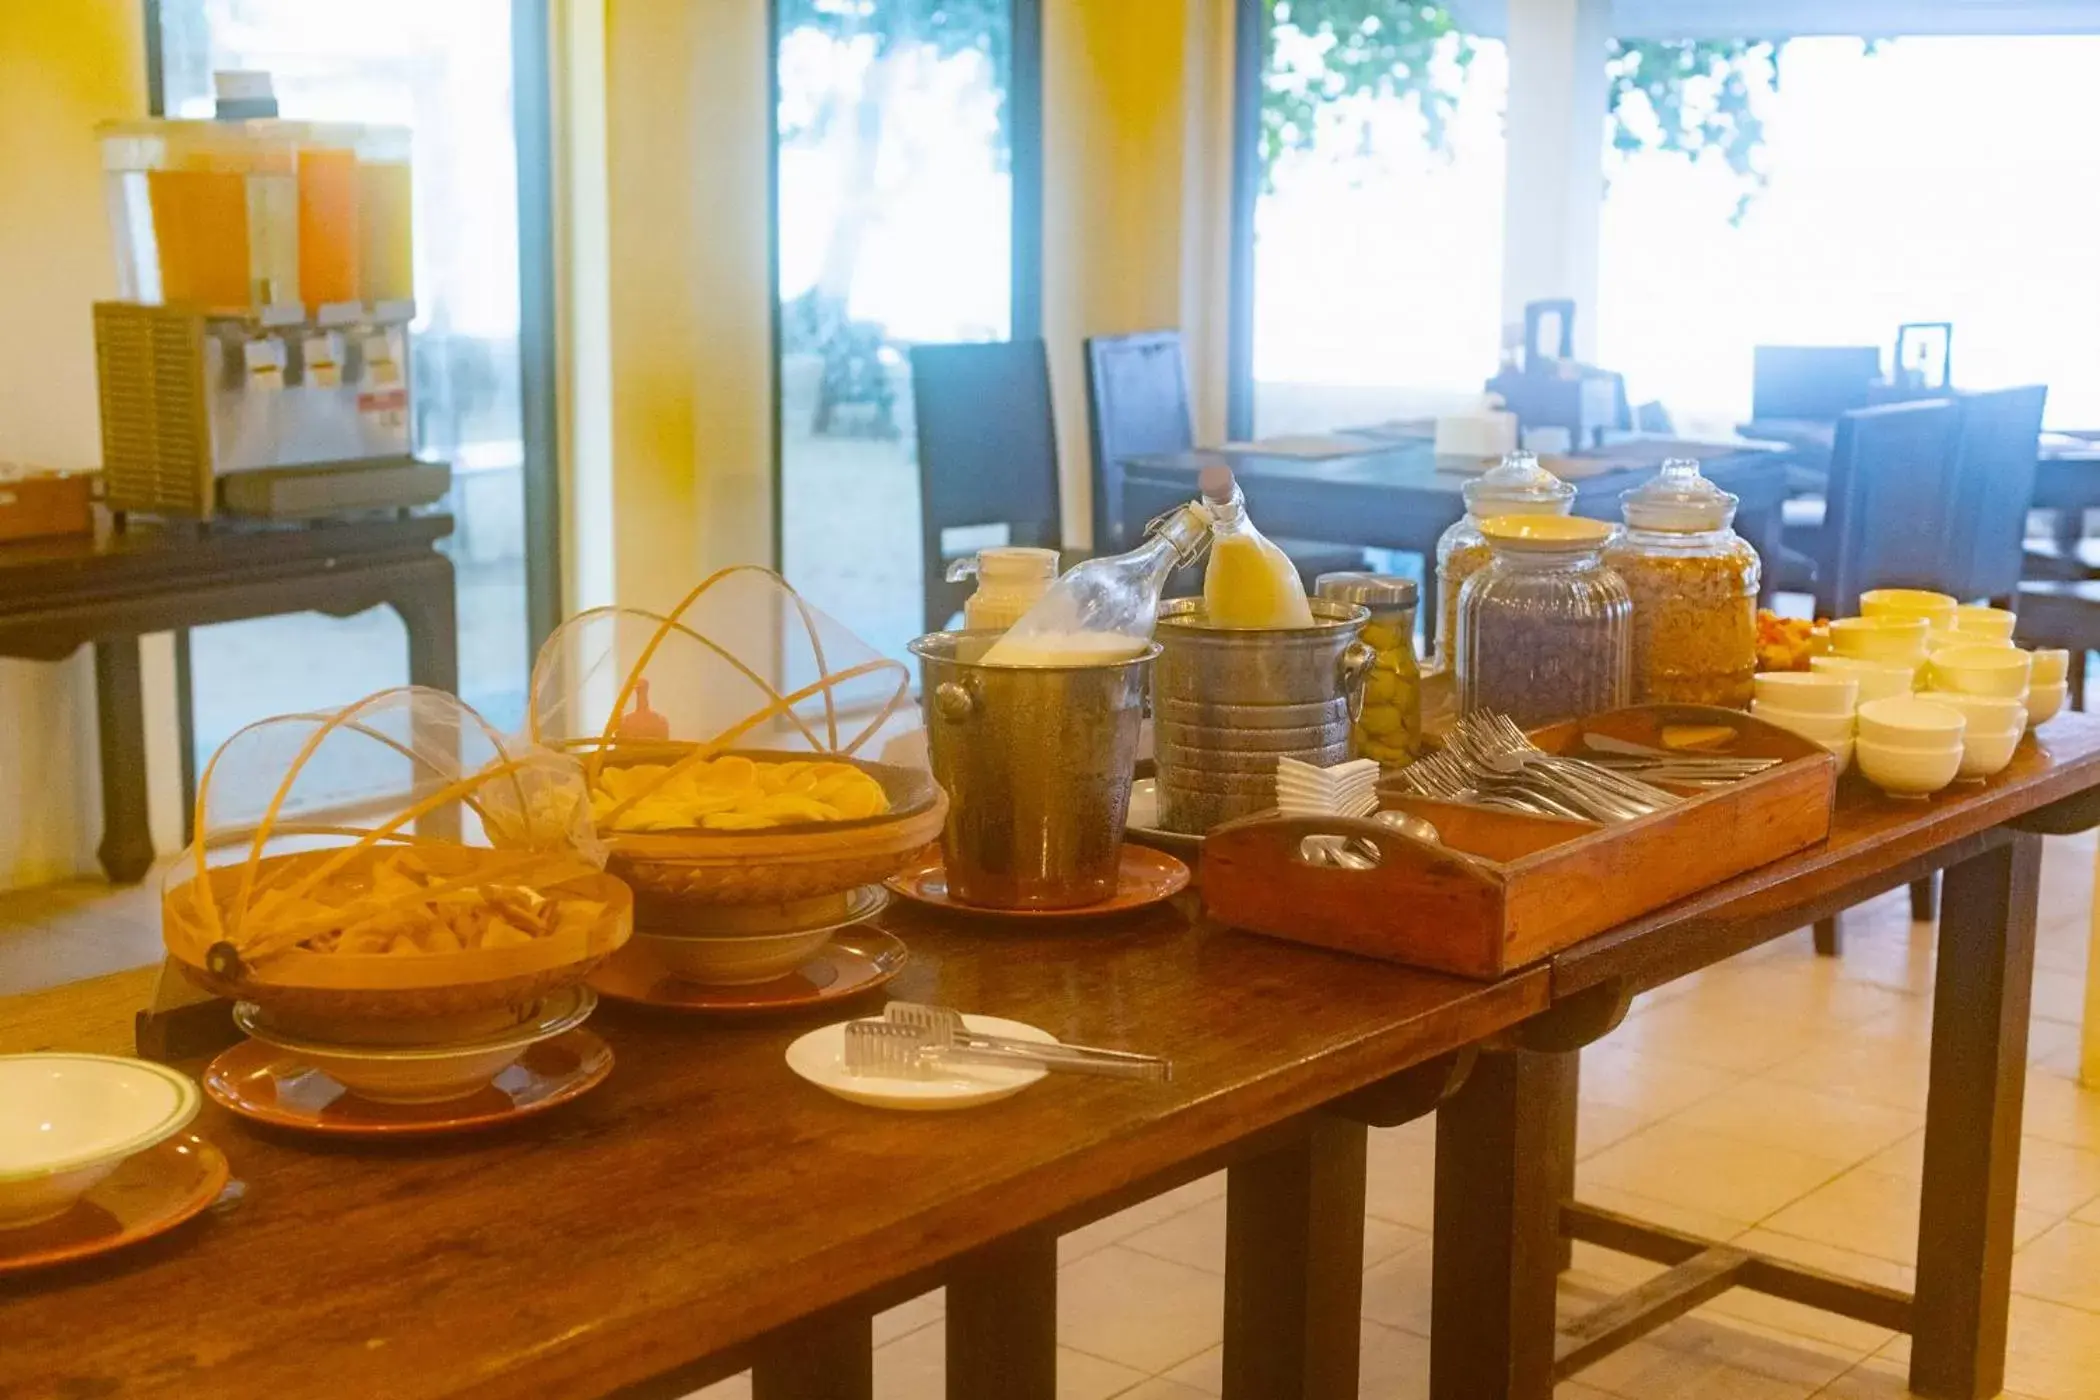 Buffet breakfast in Siam Beach Resort